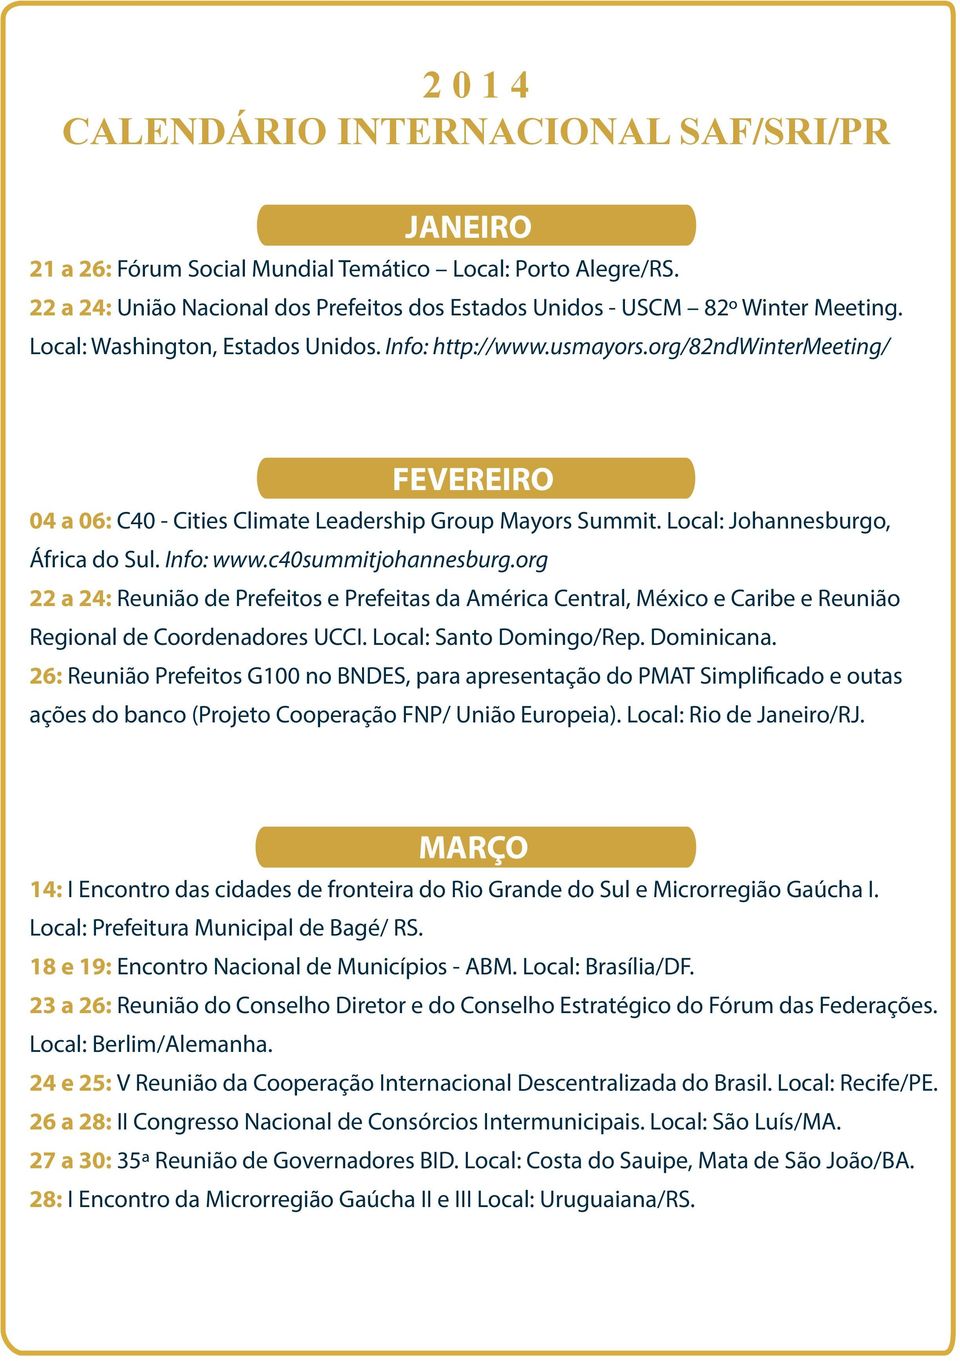 Info: www.c40summitjohannesburg.org 22 a 24: Reunião de Prefeitos e Prefeitas da América Central, México e Caribe e Reunião Regional de Coordenadores UCCI. Local: Santo Domingo/Rep. Dominicana.